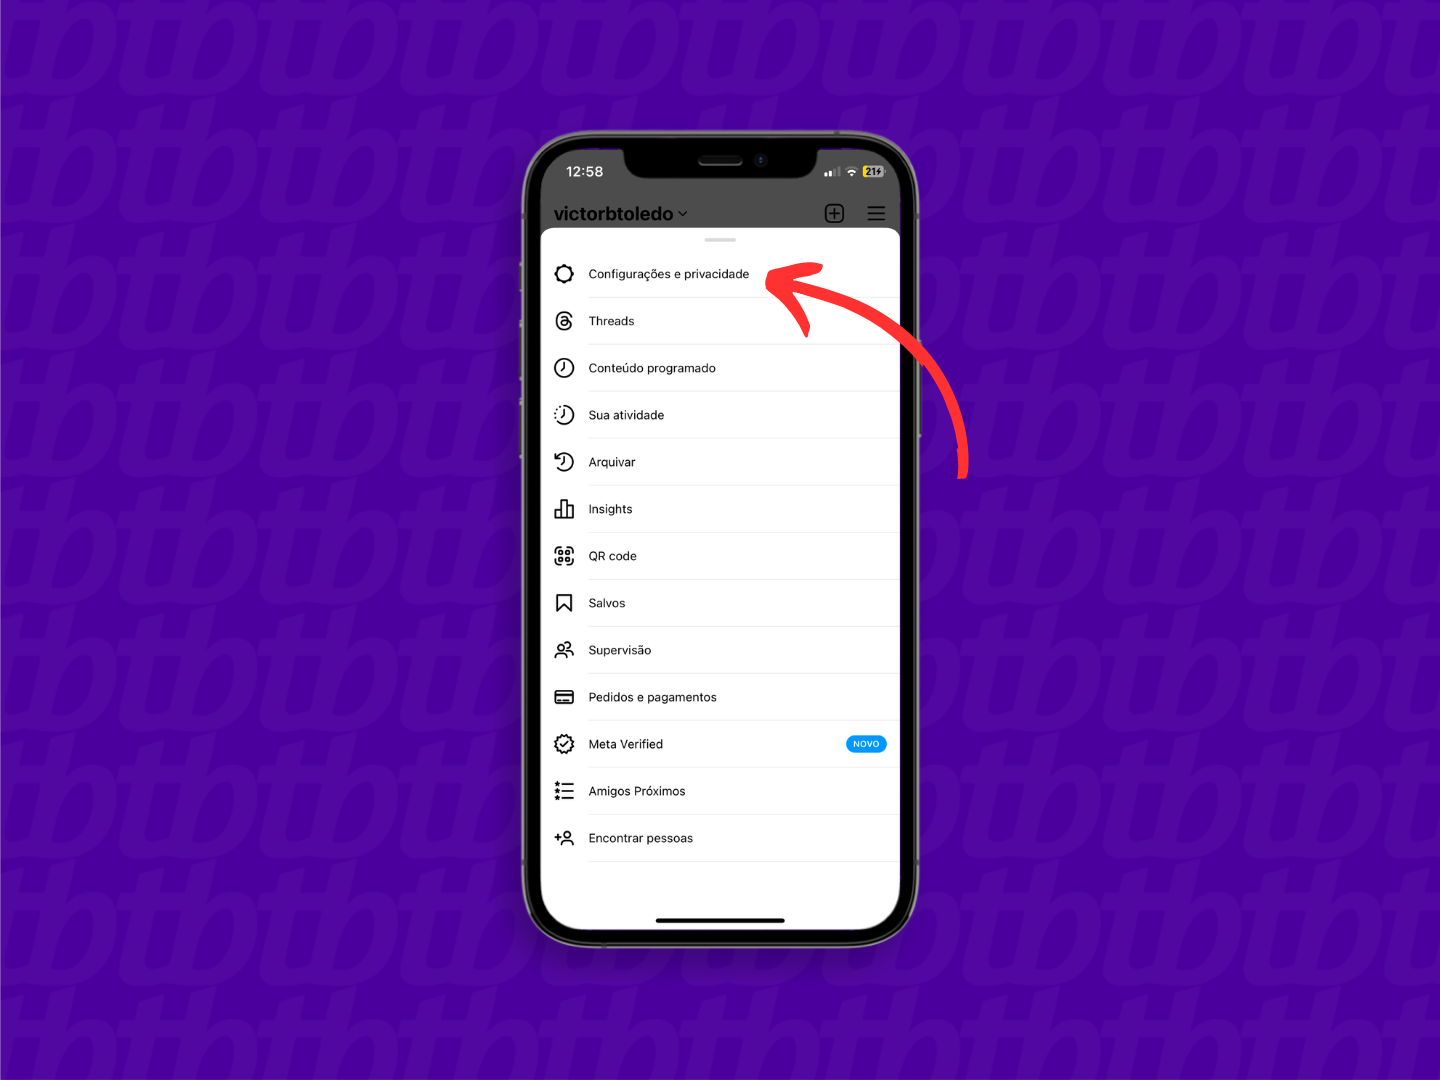 Mockup de celular com print de tela do Instagram que indica o menu "Configurações e privacidade" usado para acessar configurações de download e arquivo da rede social.